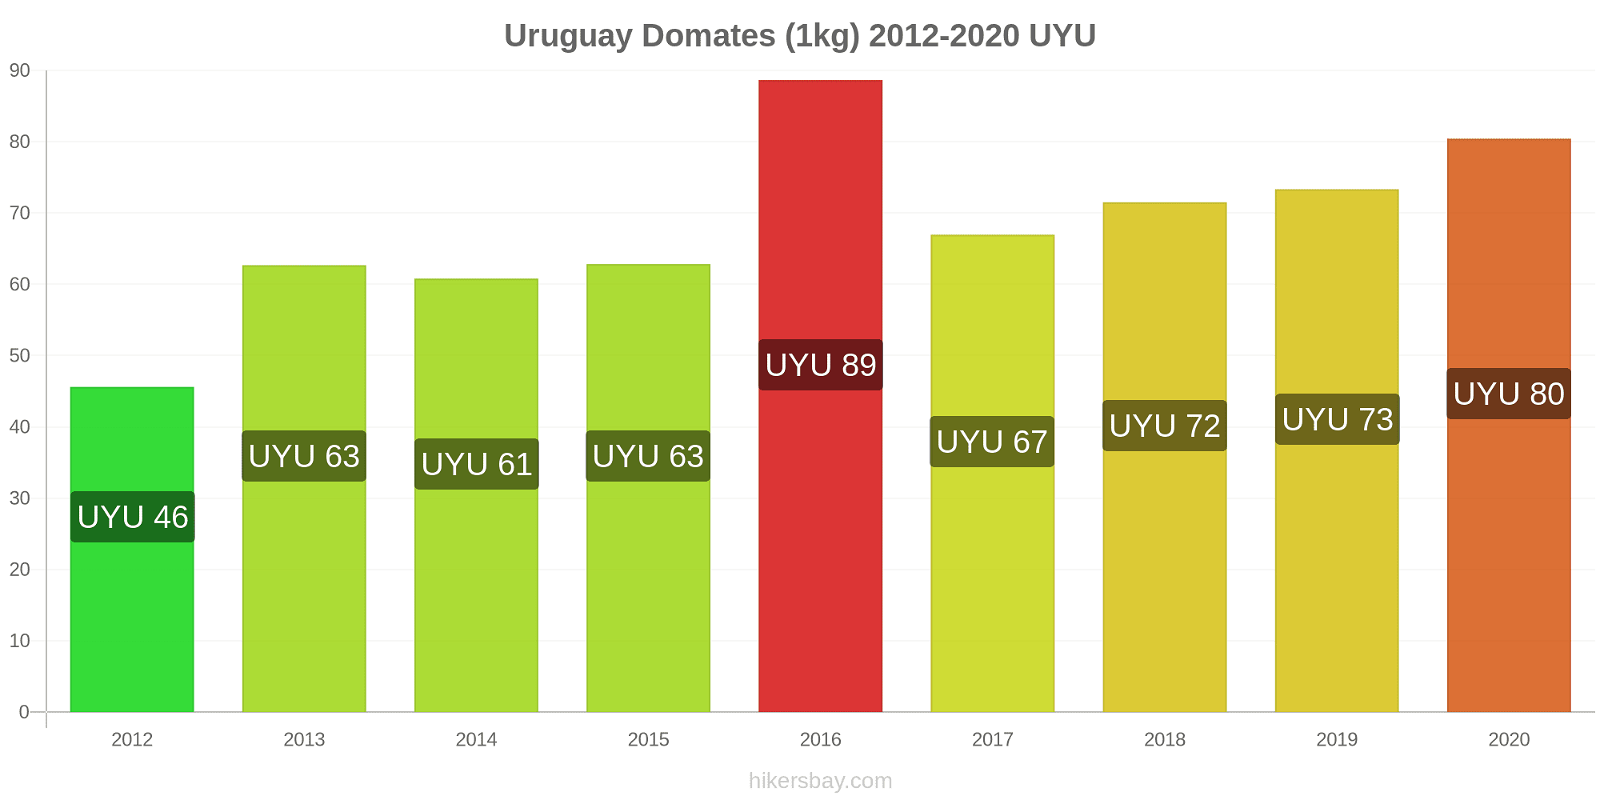 Uruguay fiyat değişiklikleri Domates (1kg) hikersbay.com